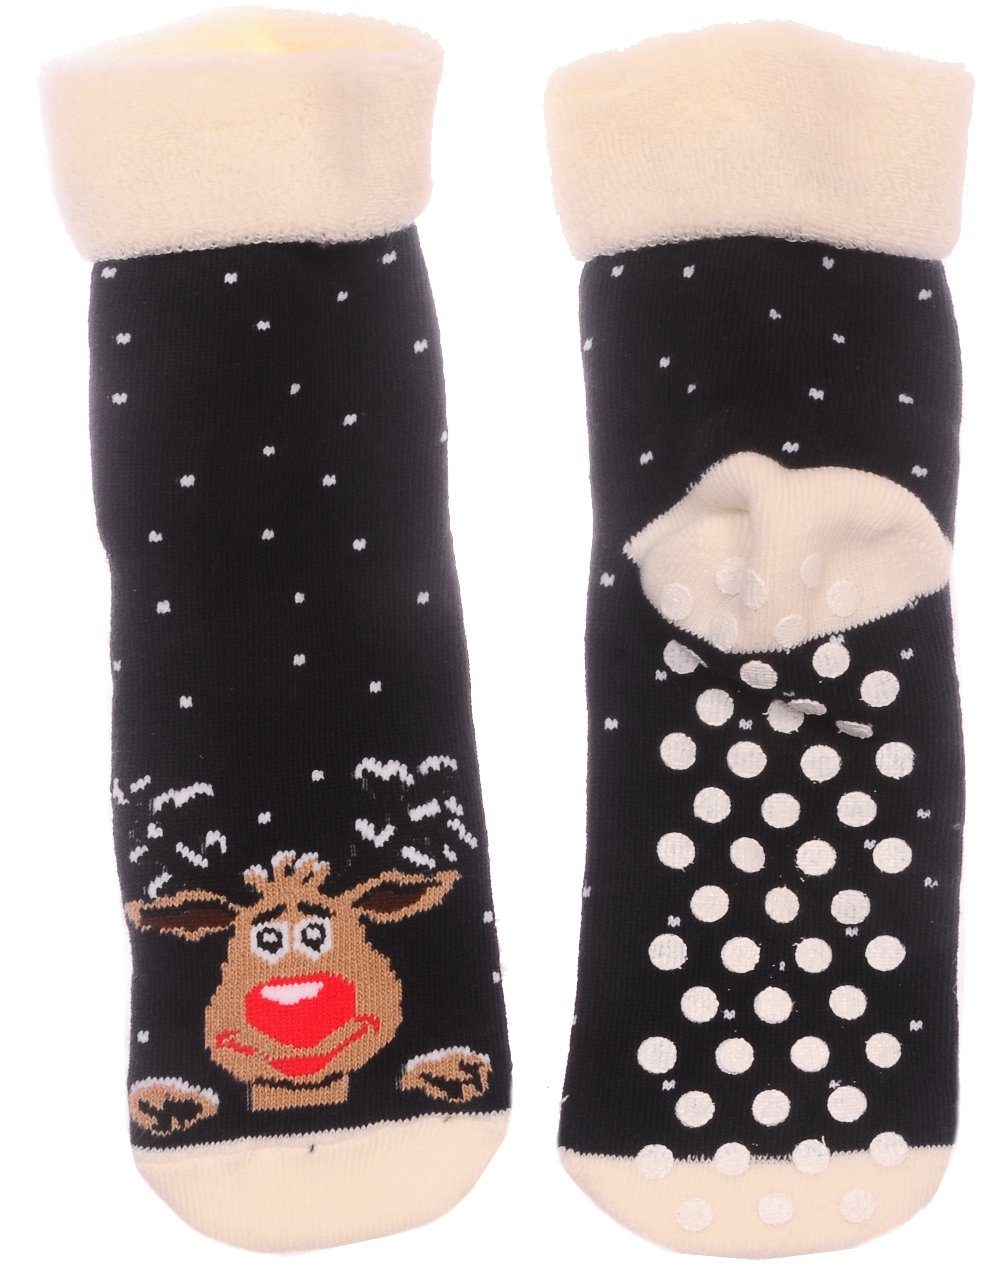 Martinex Thermosocken Socken Weihnachten Weihnachtssocken Antirutschsocken Strümpfe 35 36 38 für Jugendliche und Erwachsene | Thermosocken